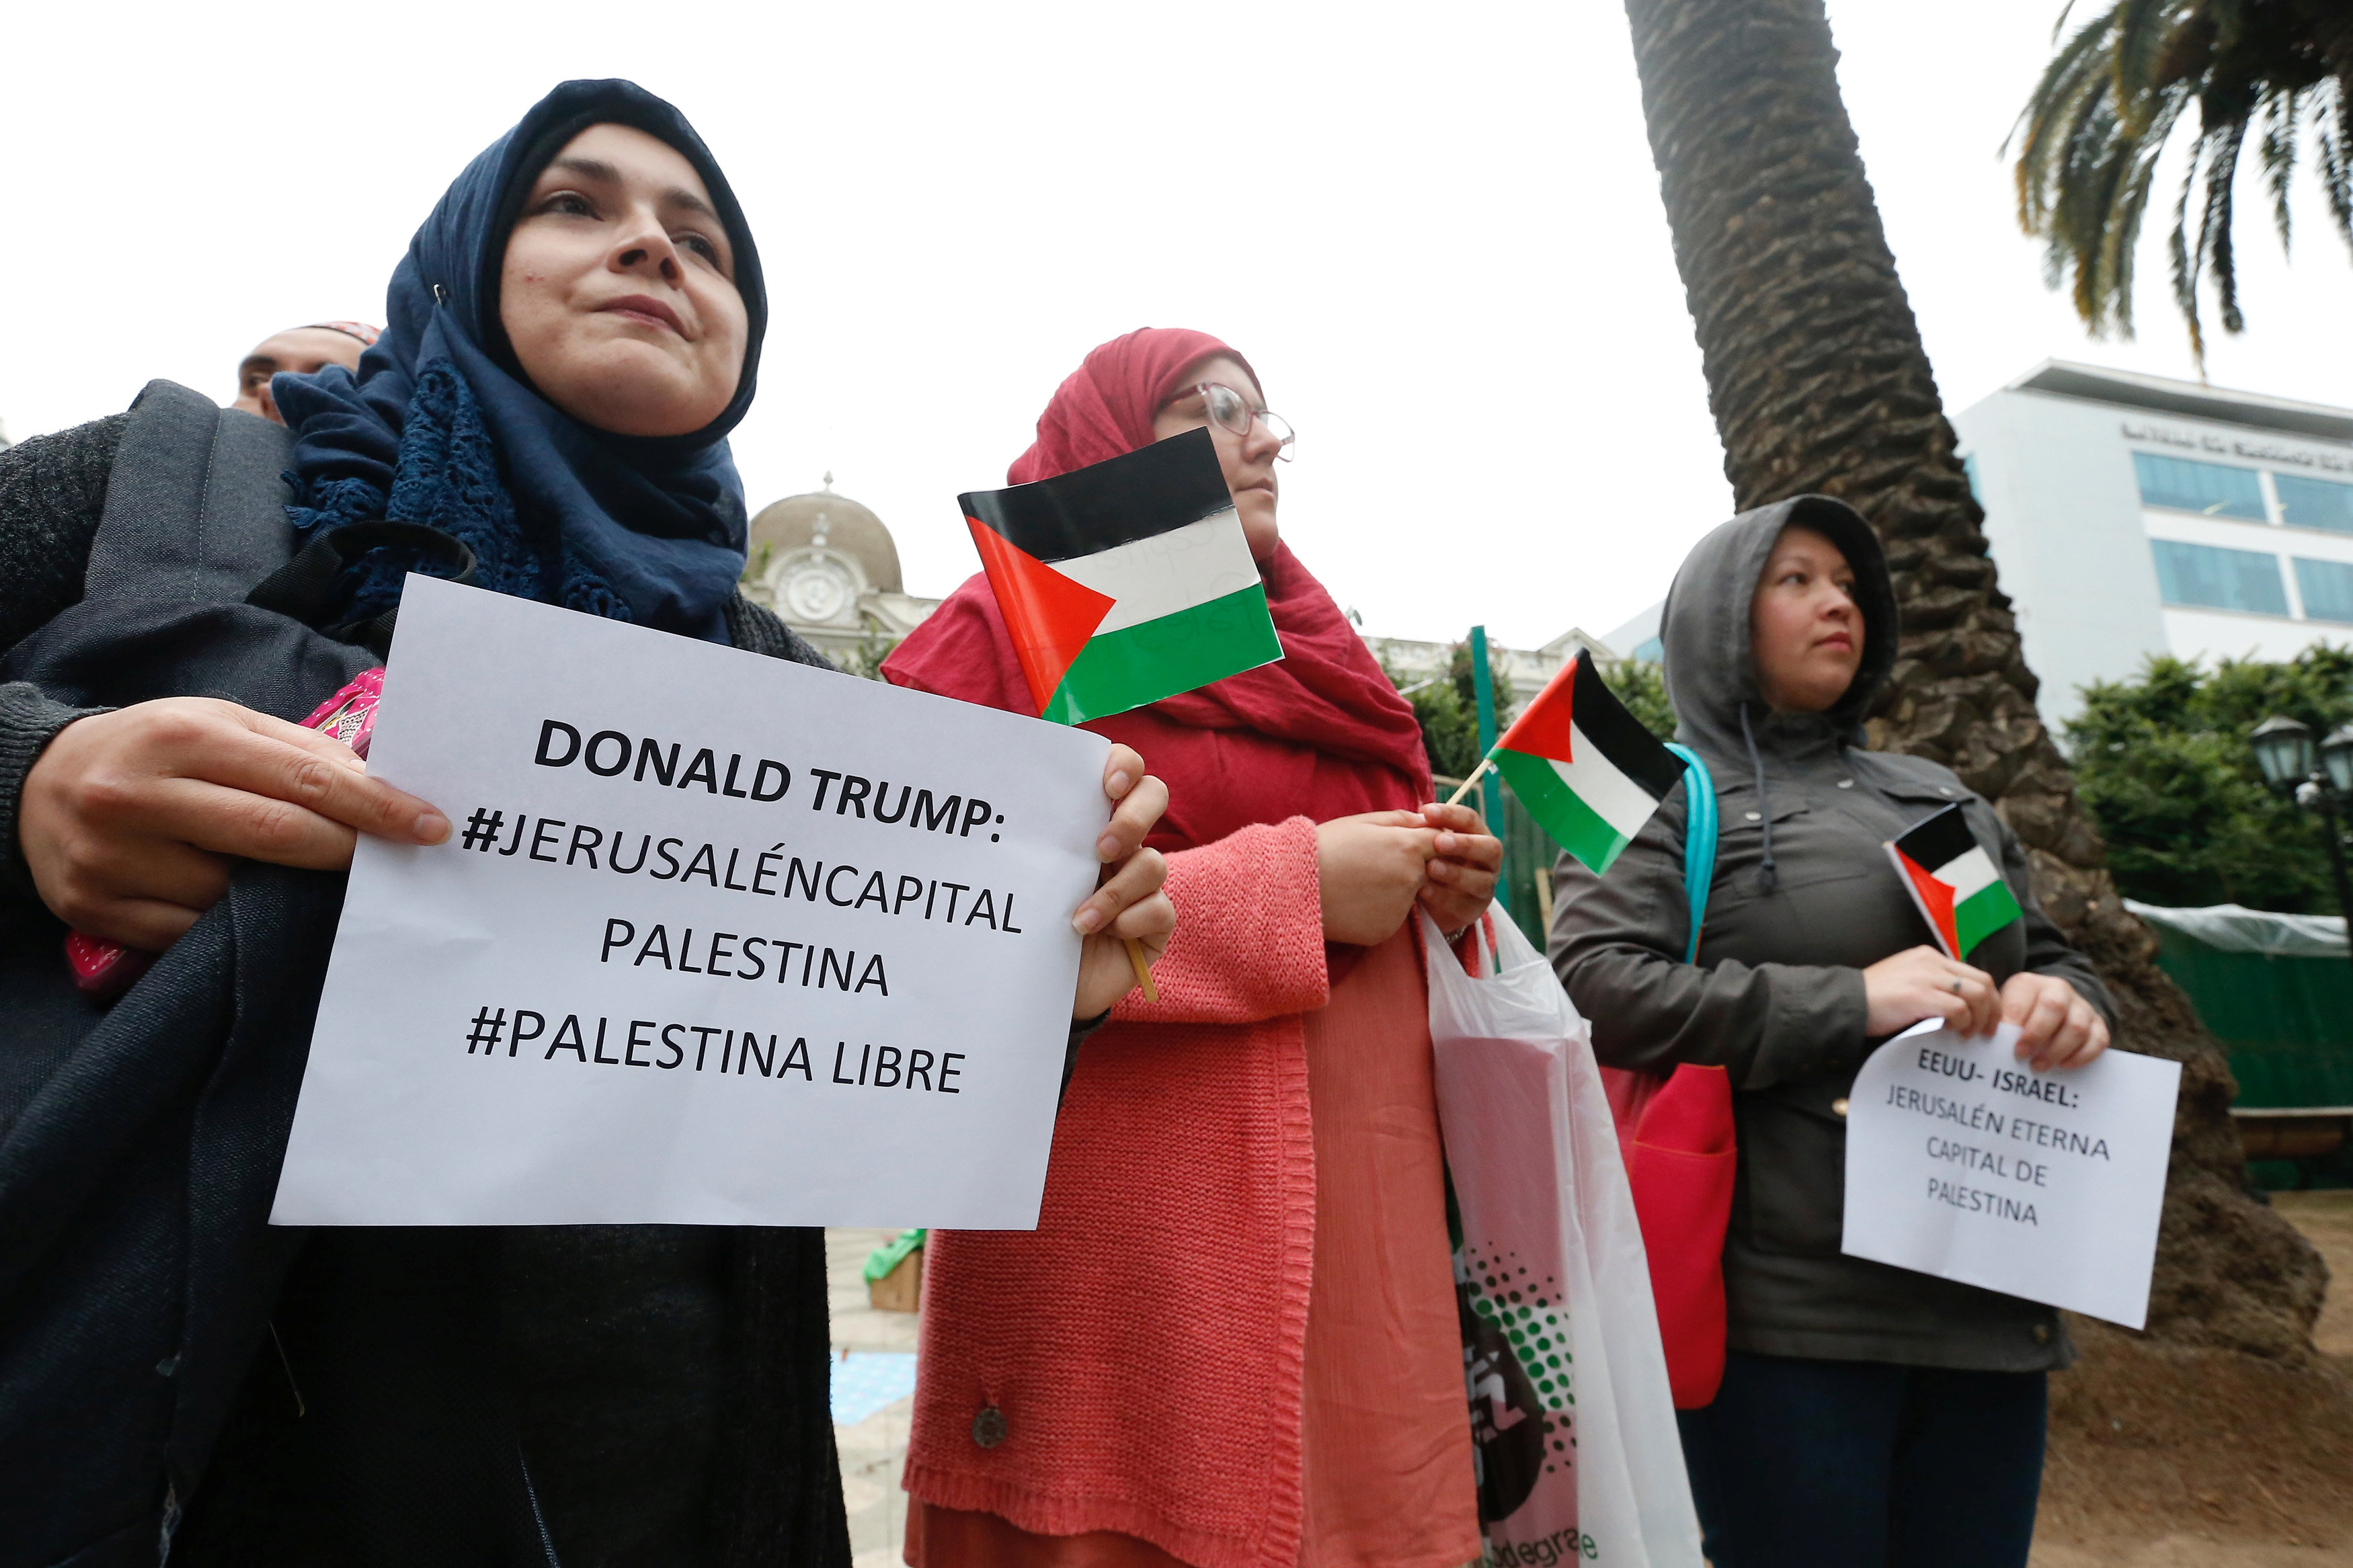 ¿Crees que la decisión de Donald Trump de reconocer la ciudad de Al-Quds- Jerusalén como la capital de Israel es una declaración de guerra contra el pueblo árabe musulmán?